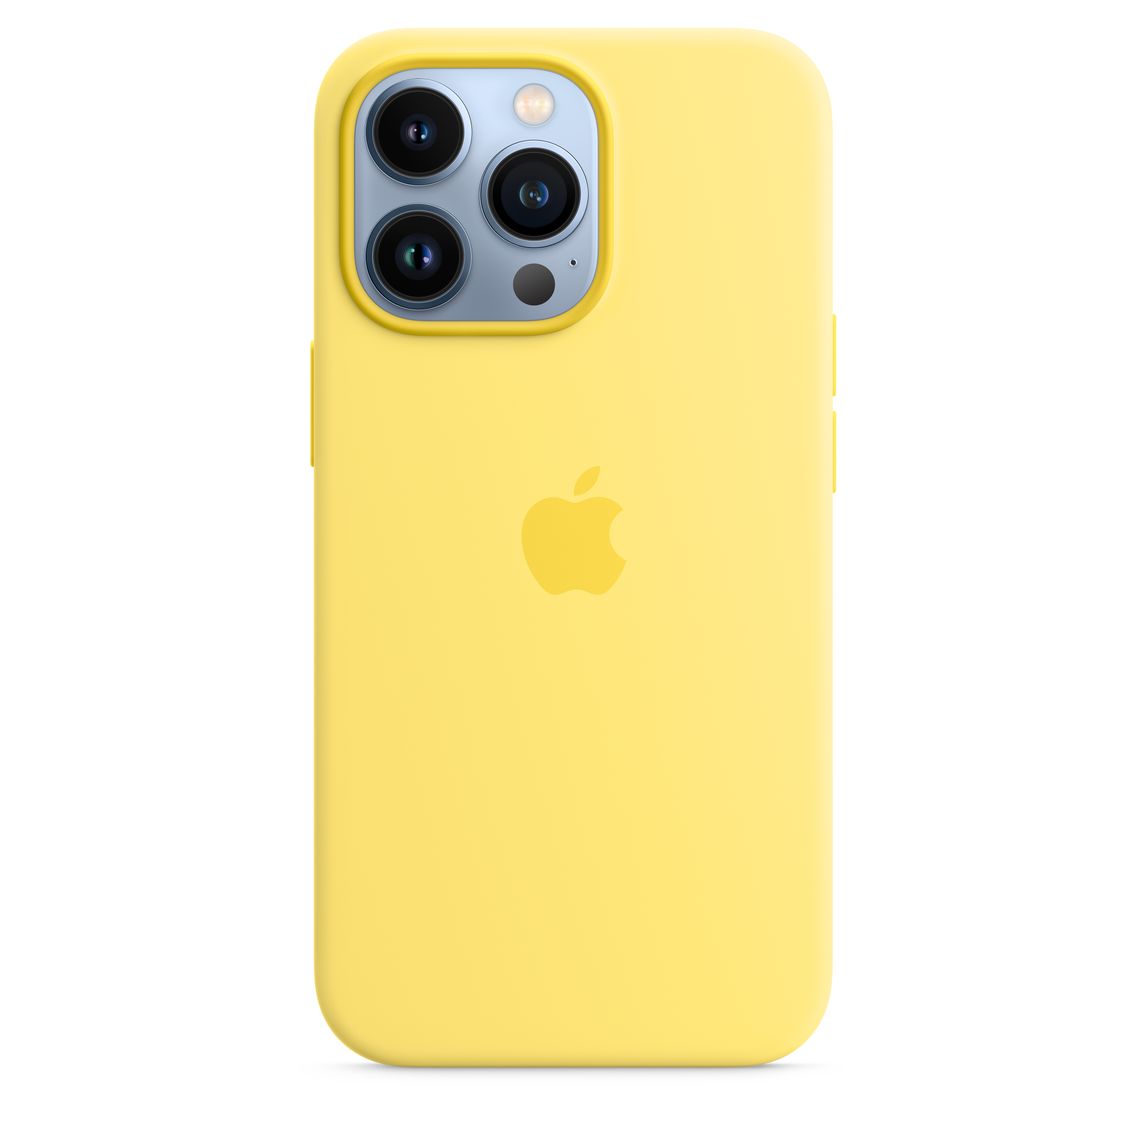 2022 蘋果春季發表會 iPhone MagSafe 矽膠保護殼